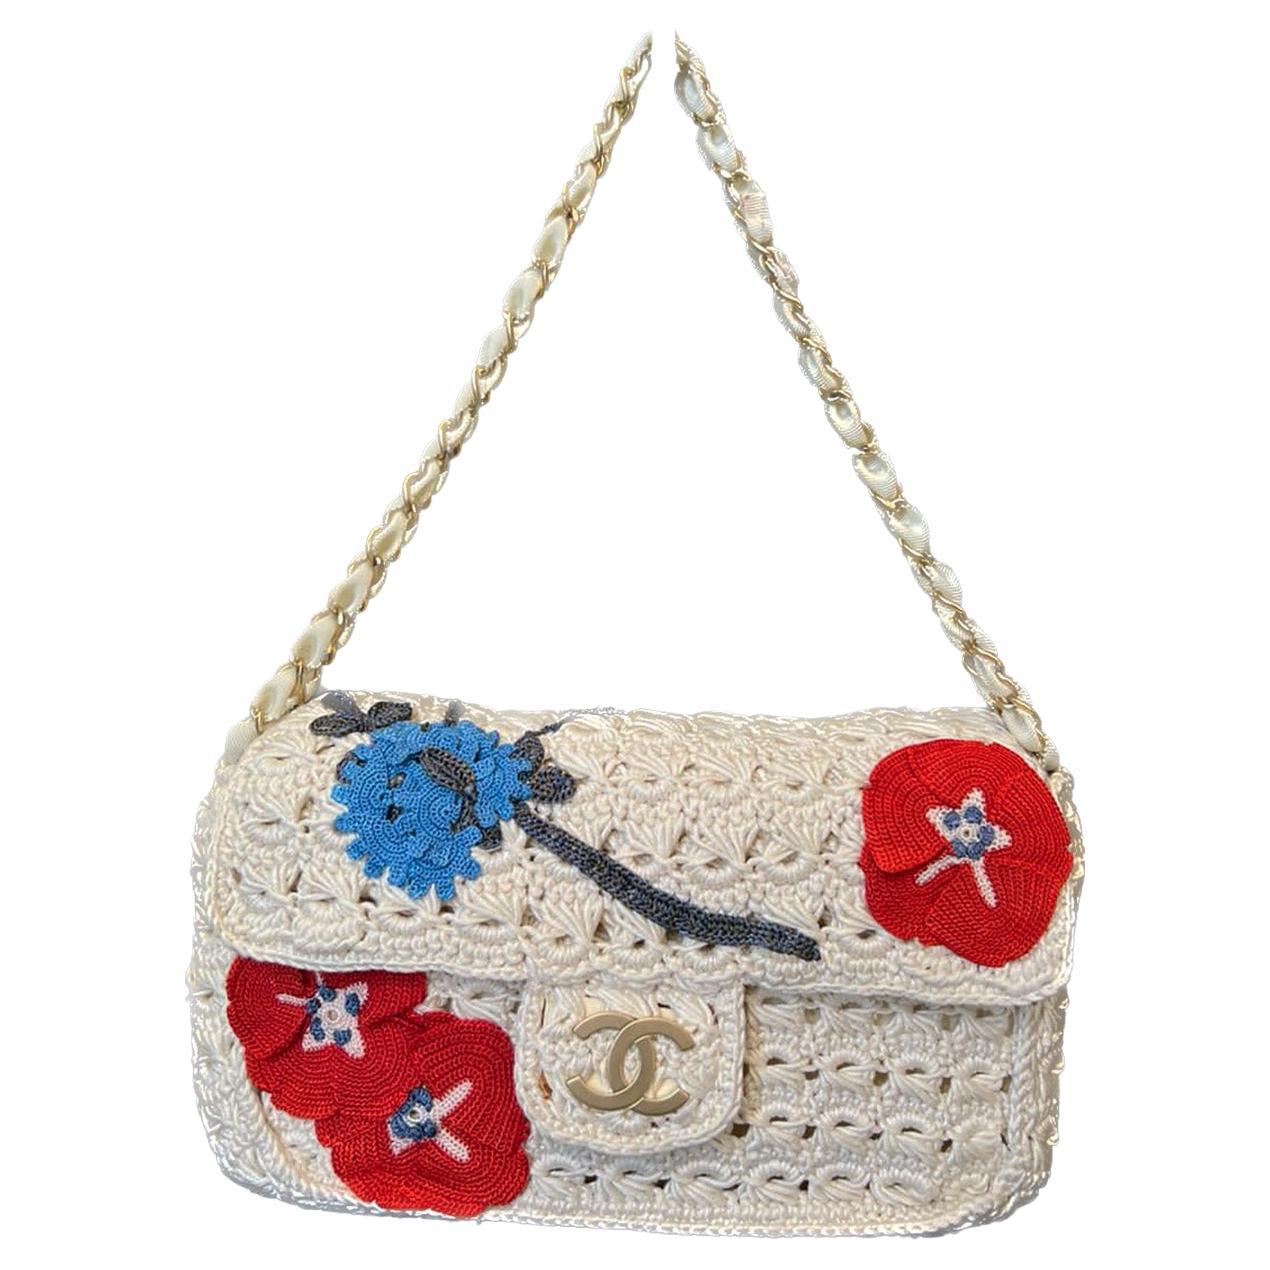 Chanel Rare Crochet Floral Flap Bag